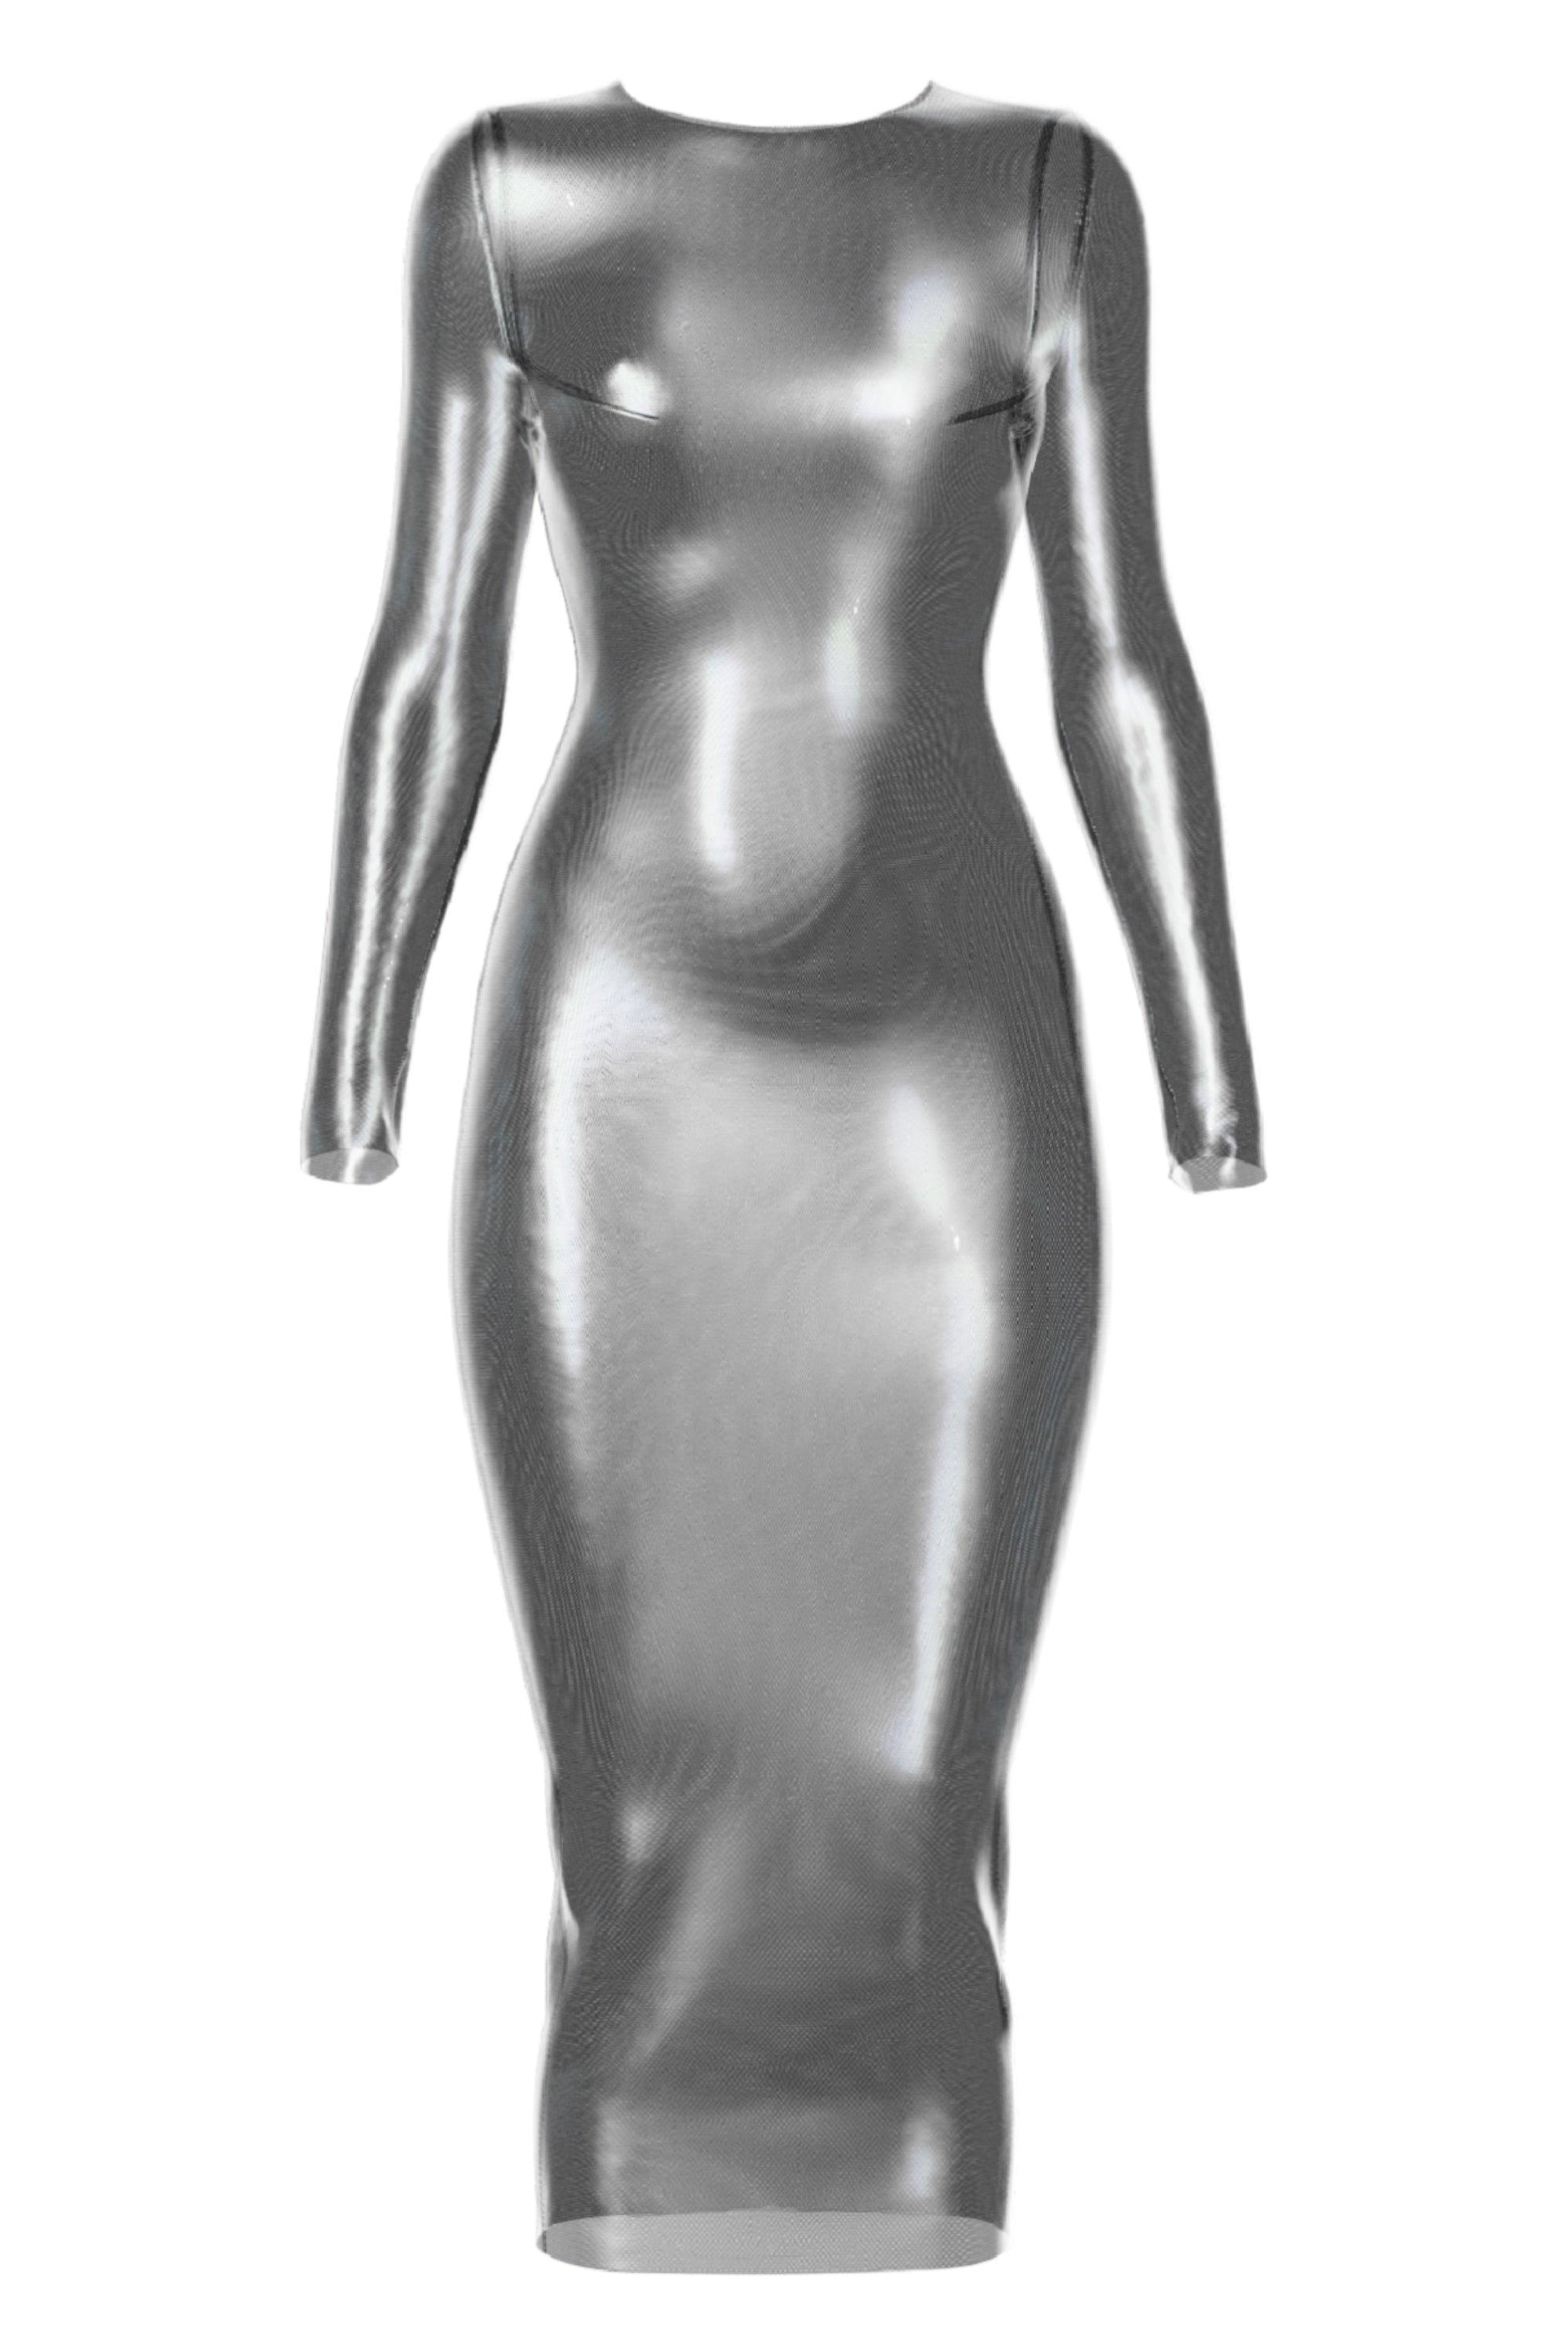 Tefia silver long dress